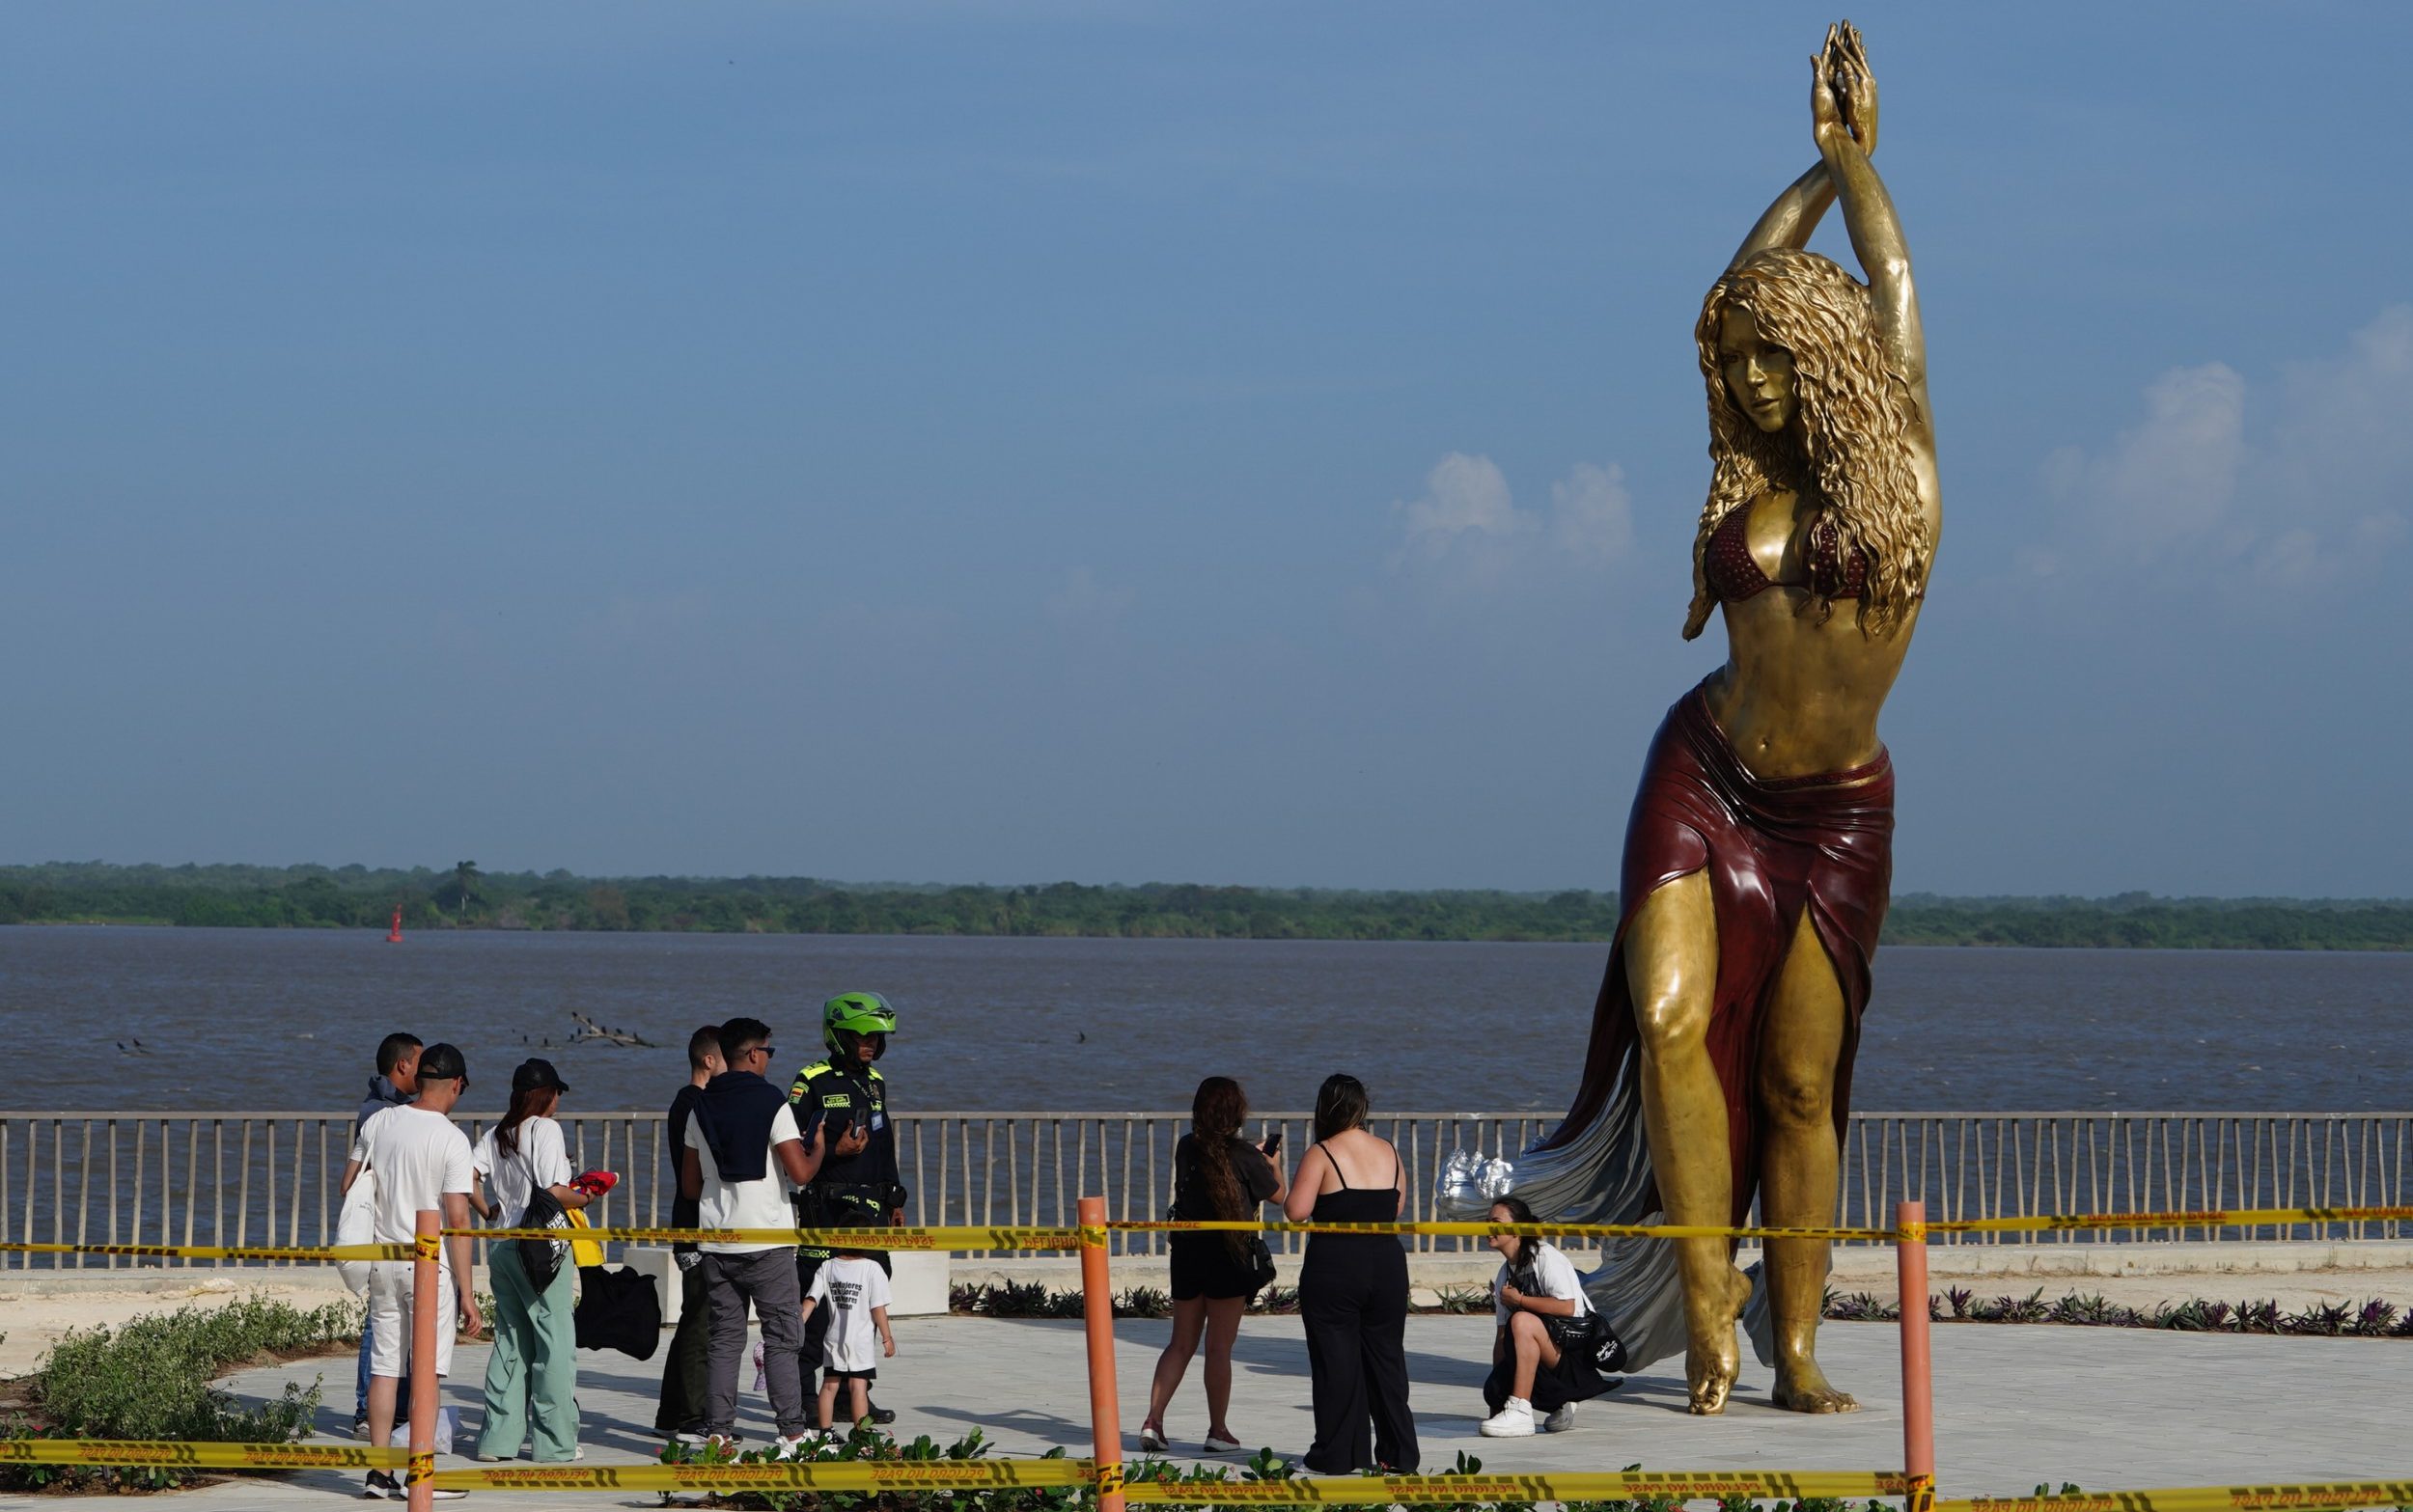 giant shakira statue celebrates singer for ‘hips that do not lie’